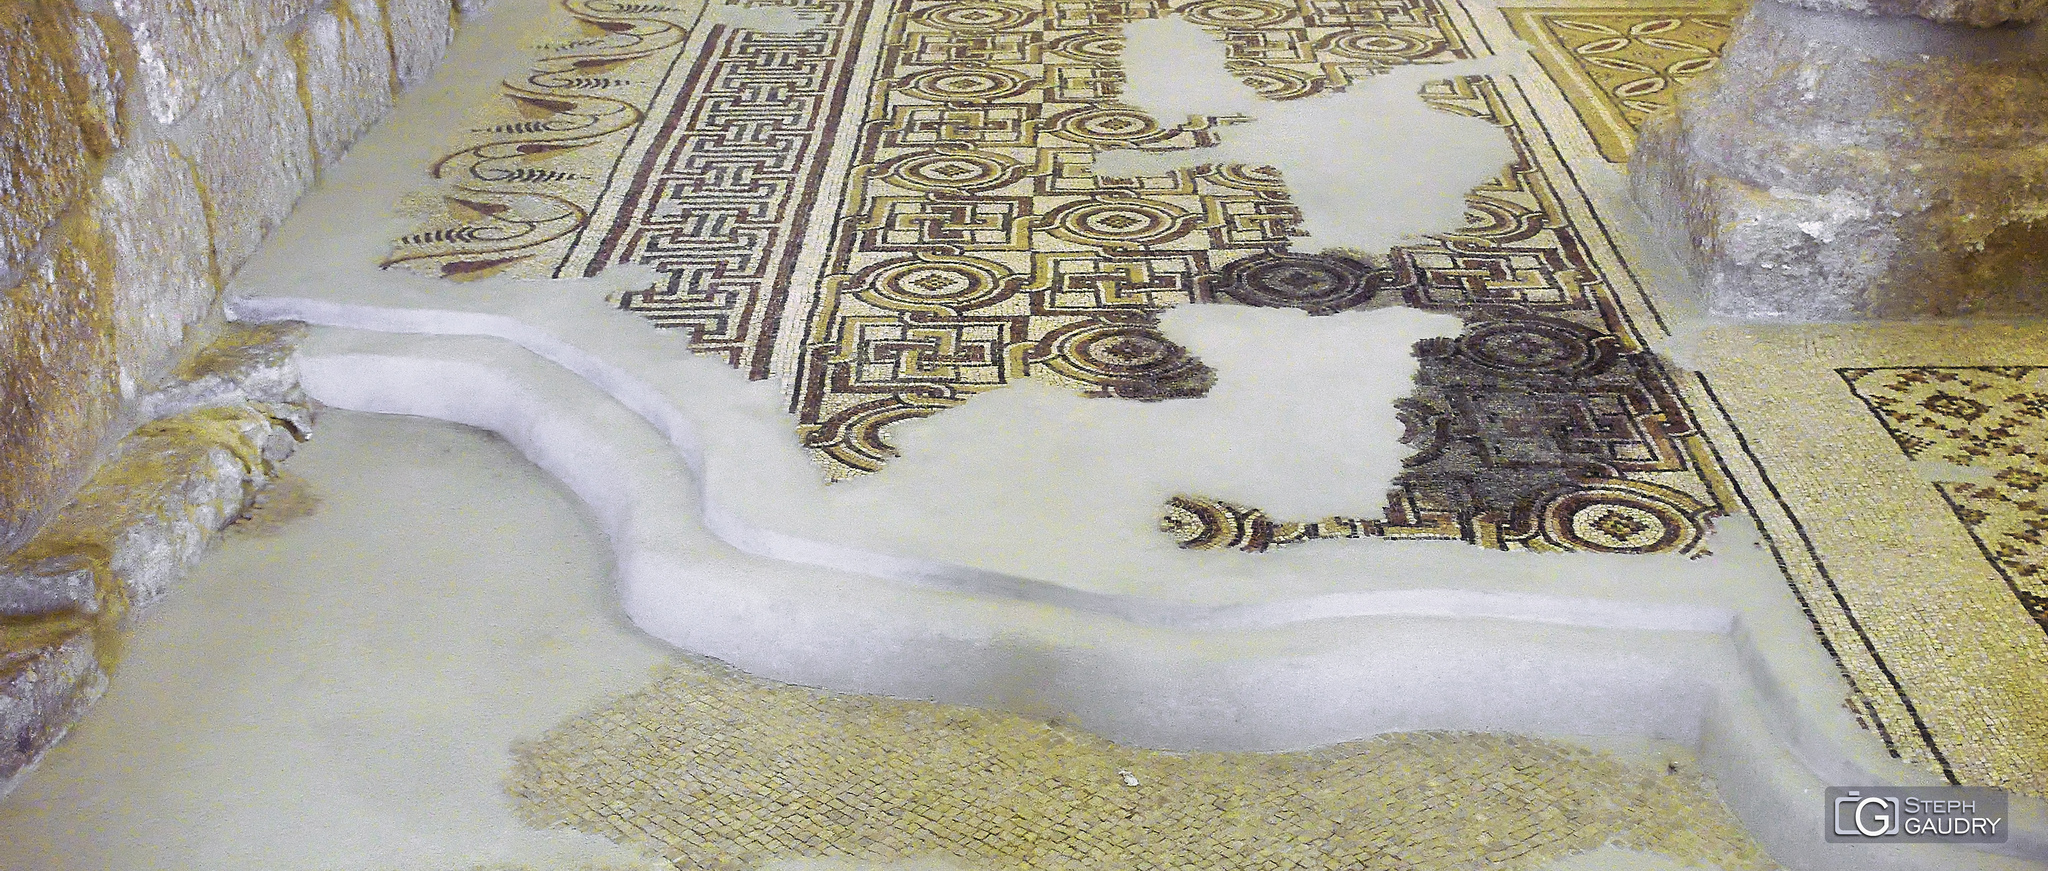 Couches de mosaïques de la basilique du mémorial de Moïse au Mont Nébo [Klik om de diavoorstelling te starten]